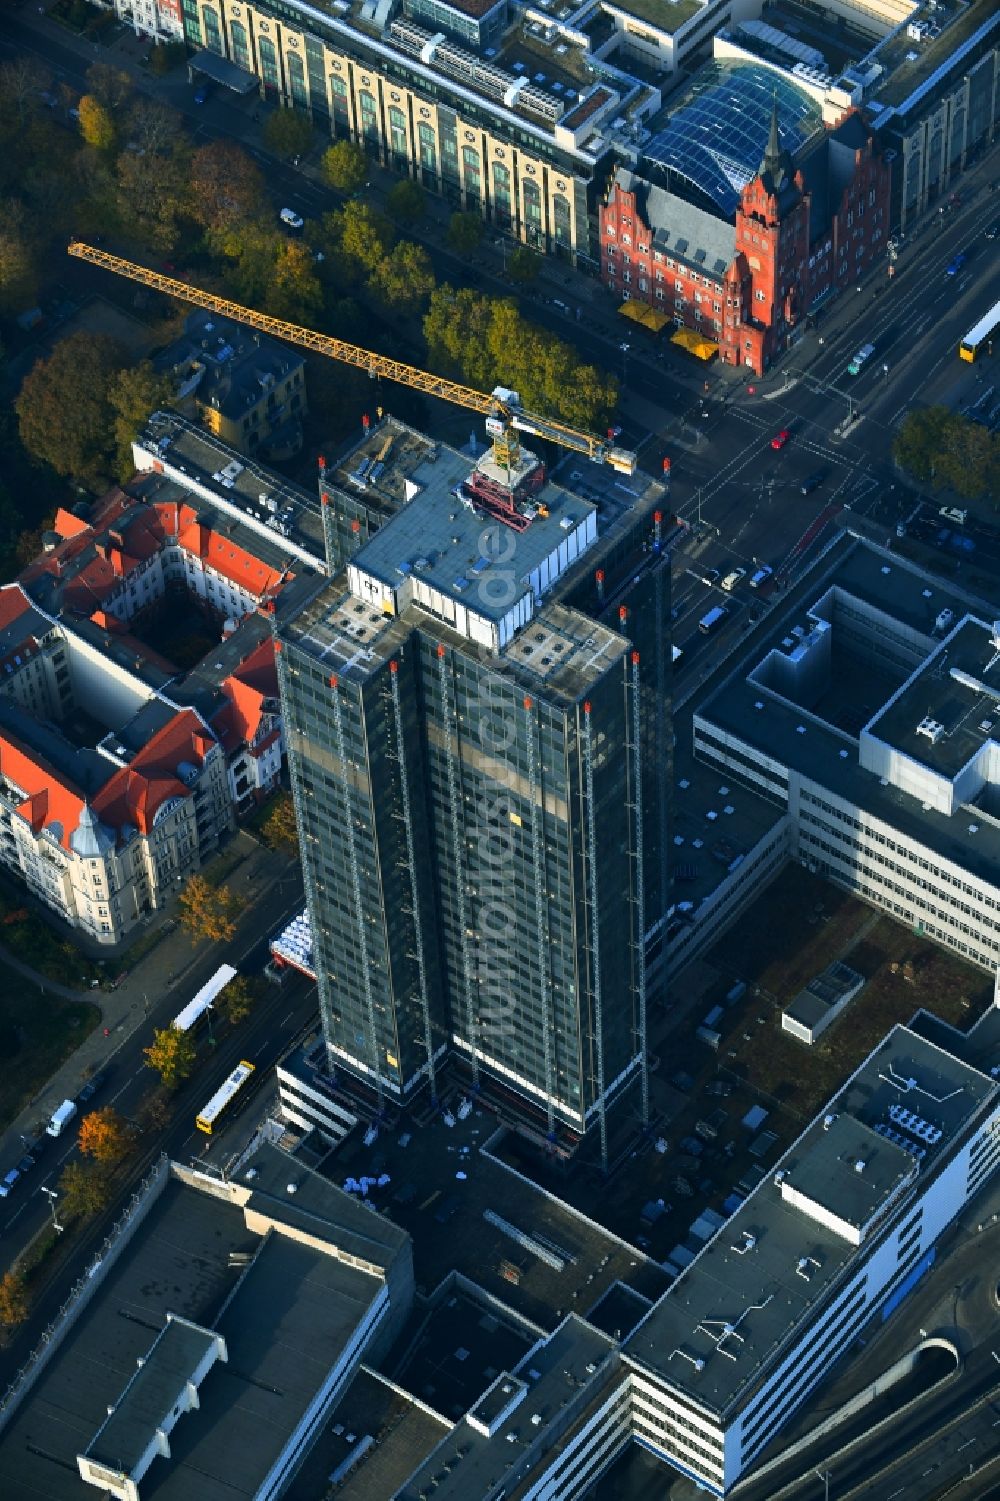 Berlin von oben - Umbau Hochhaus- Gebäude Steglitzer Kreisel im Bezirk Steglitz in Berlin